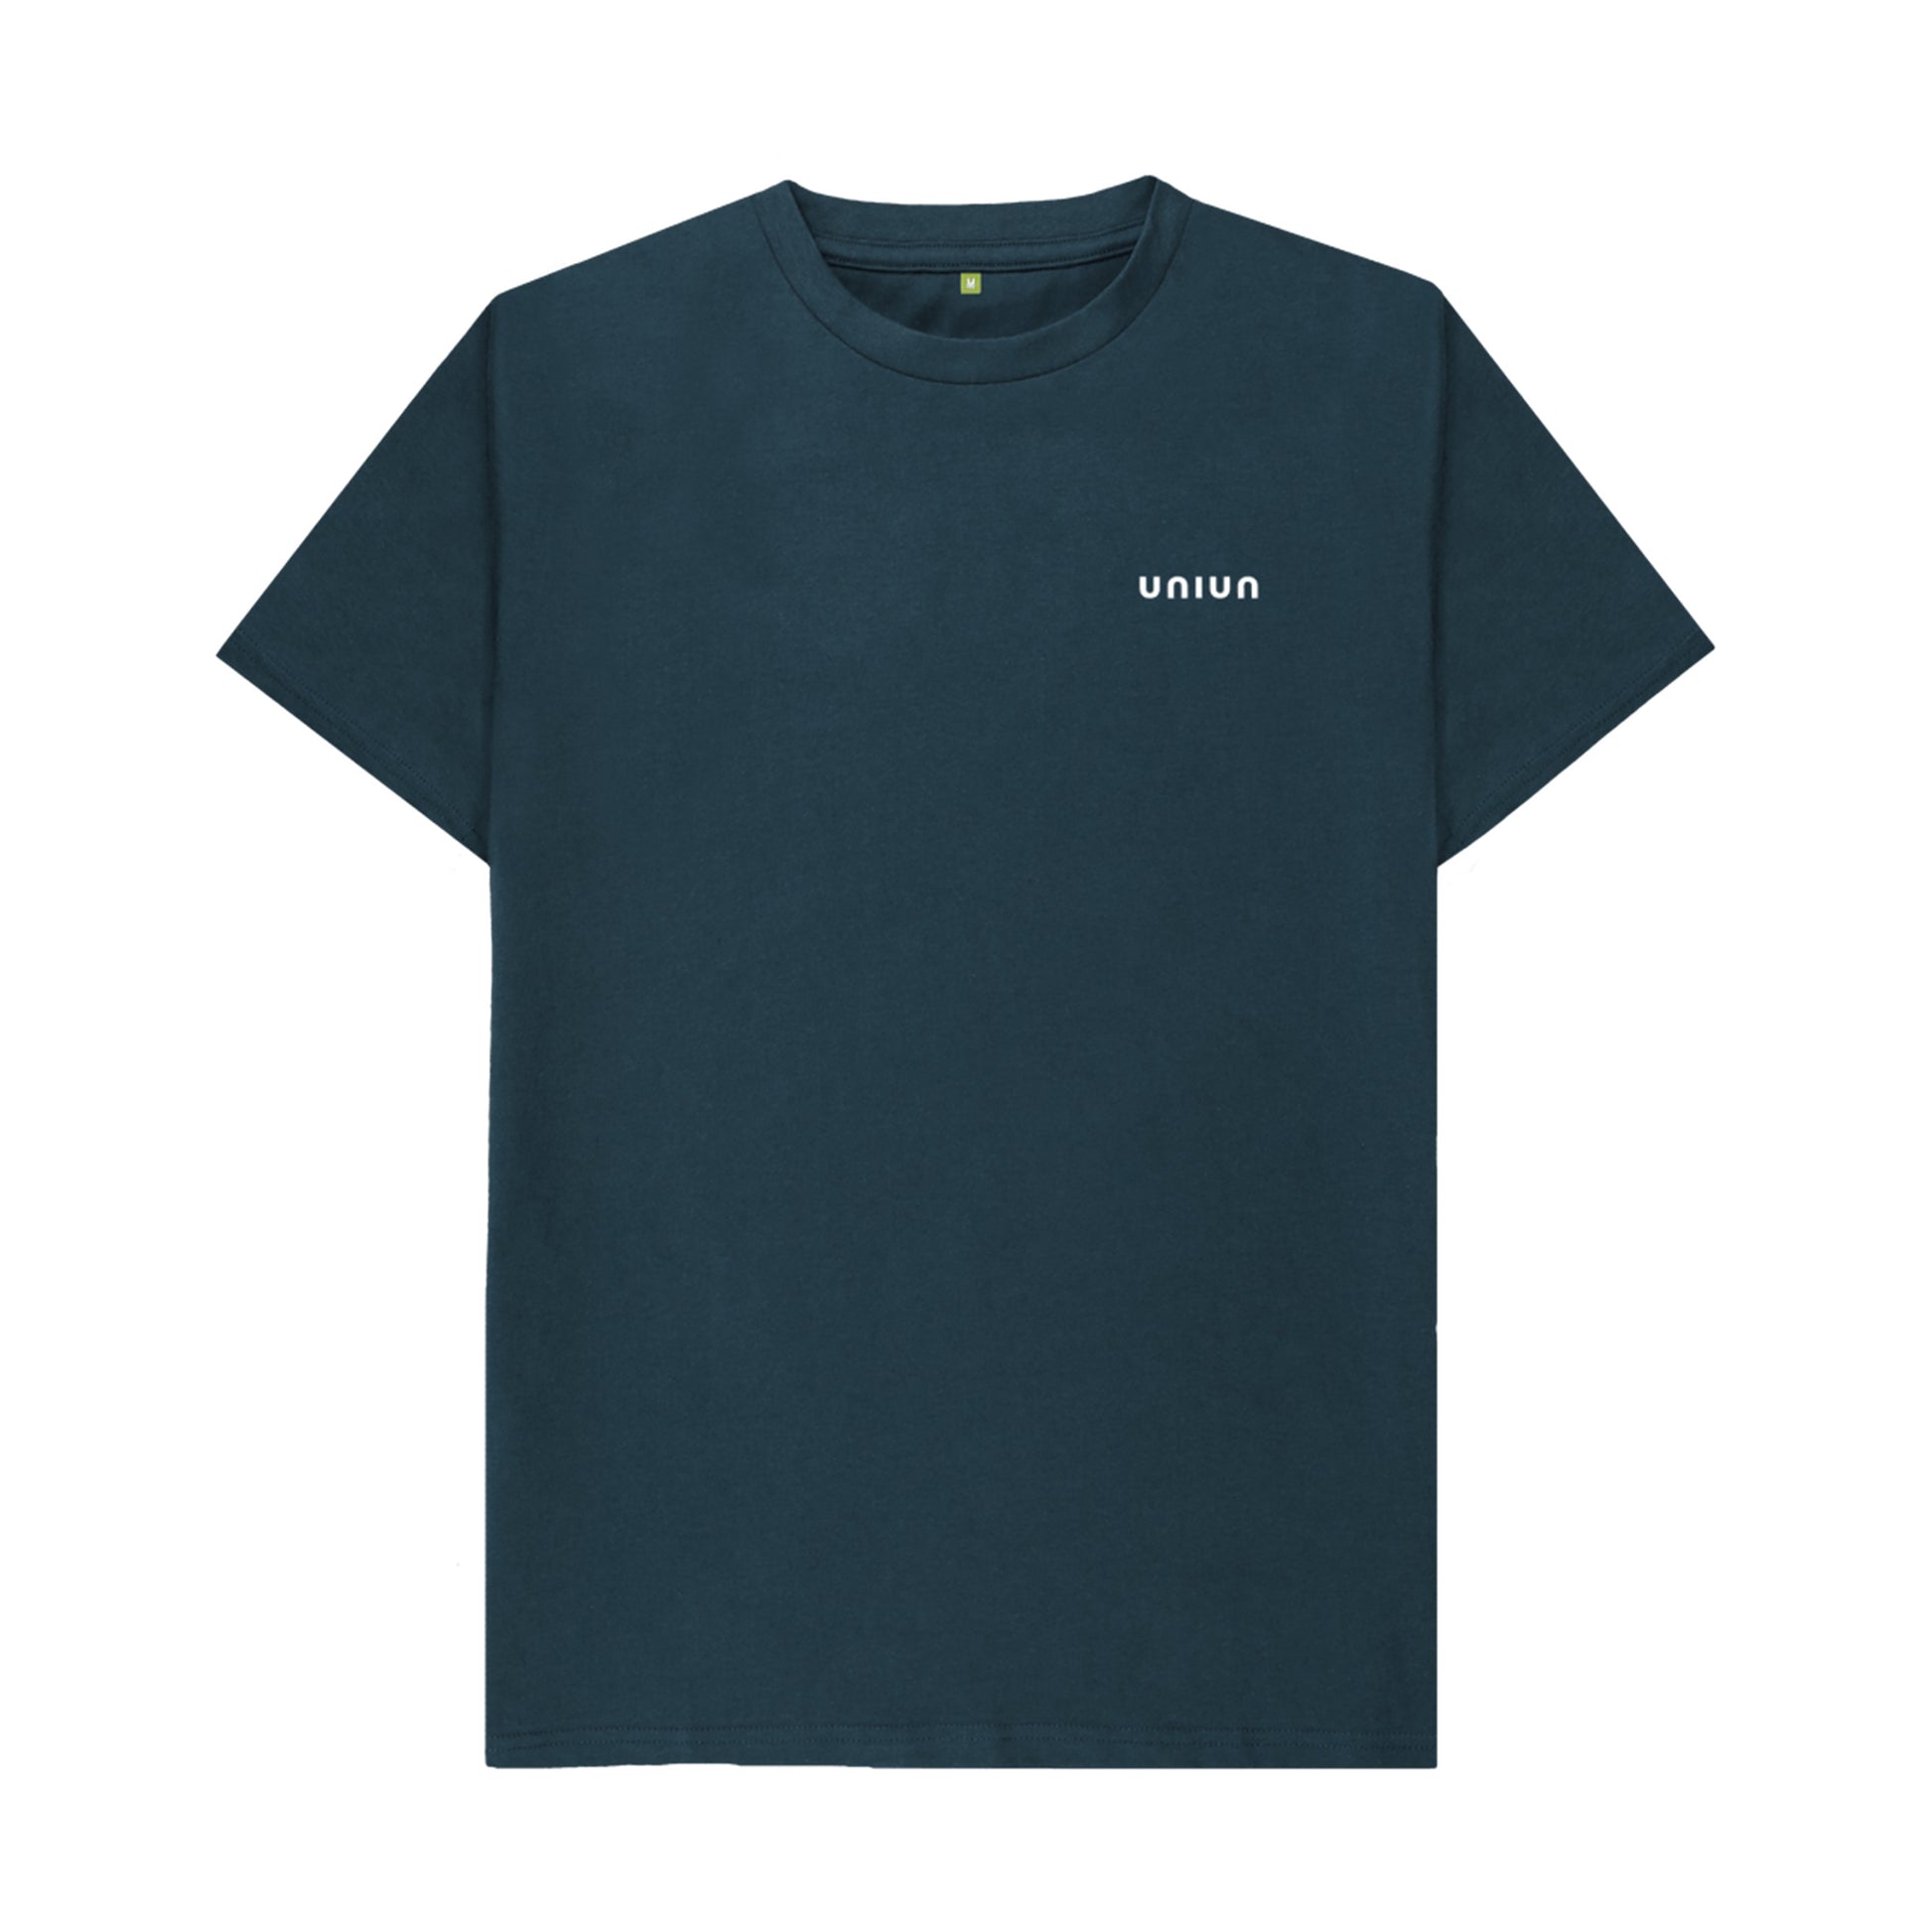 UNIUN Navy Blue T-shirt